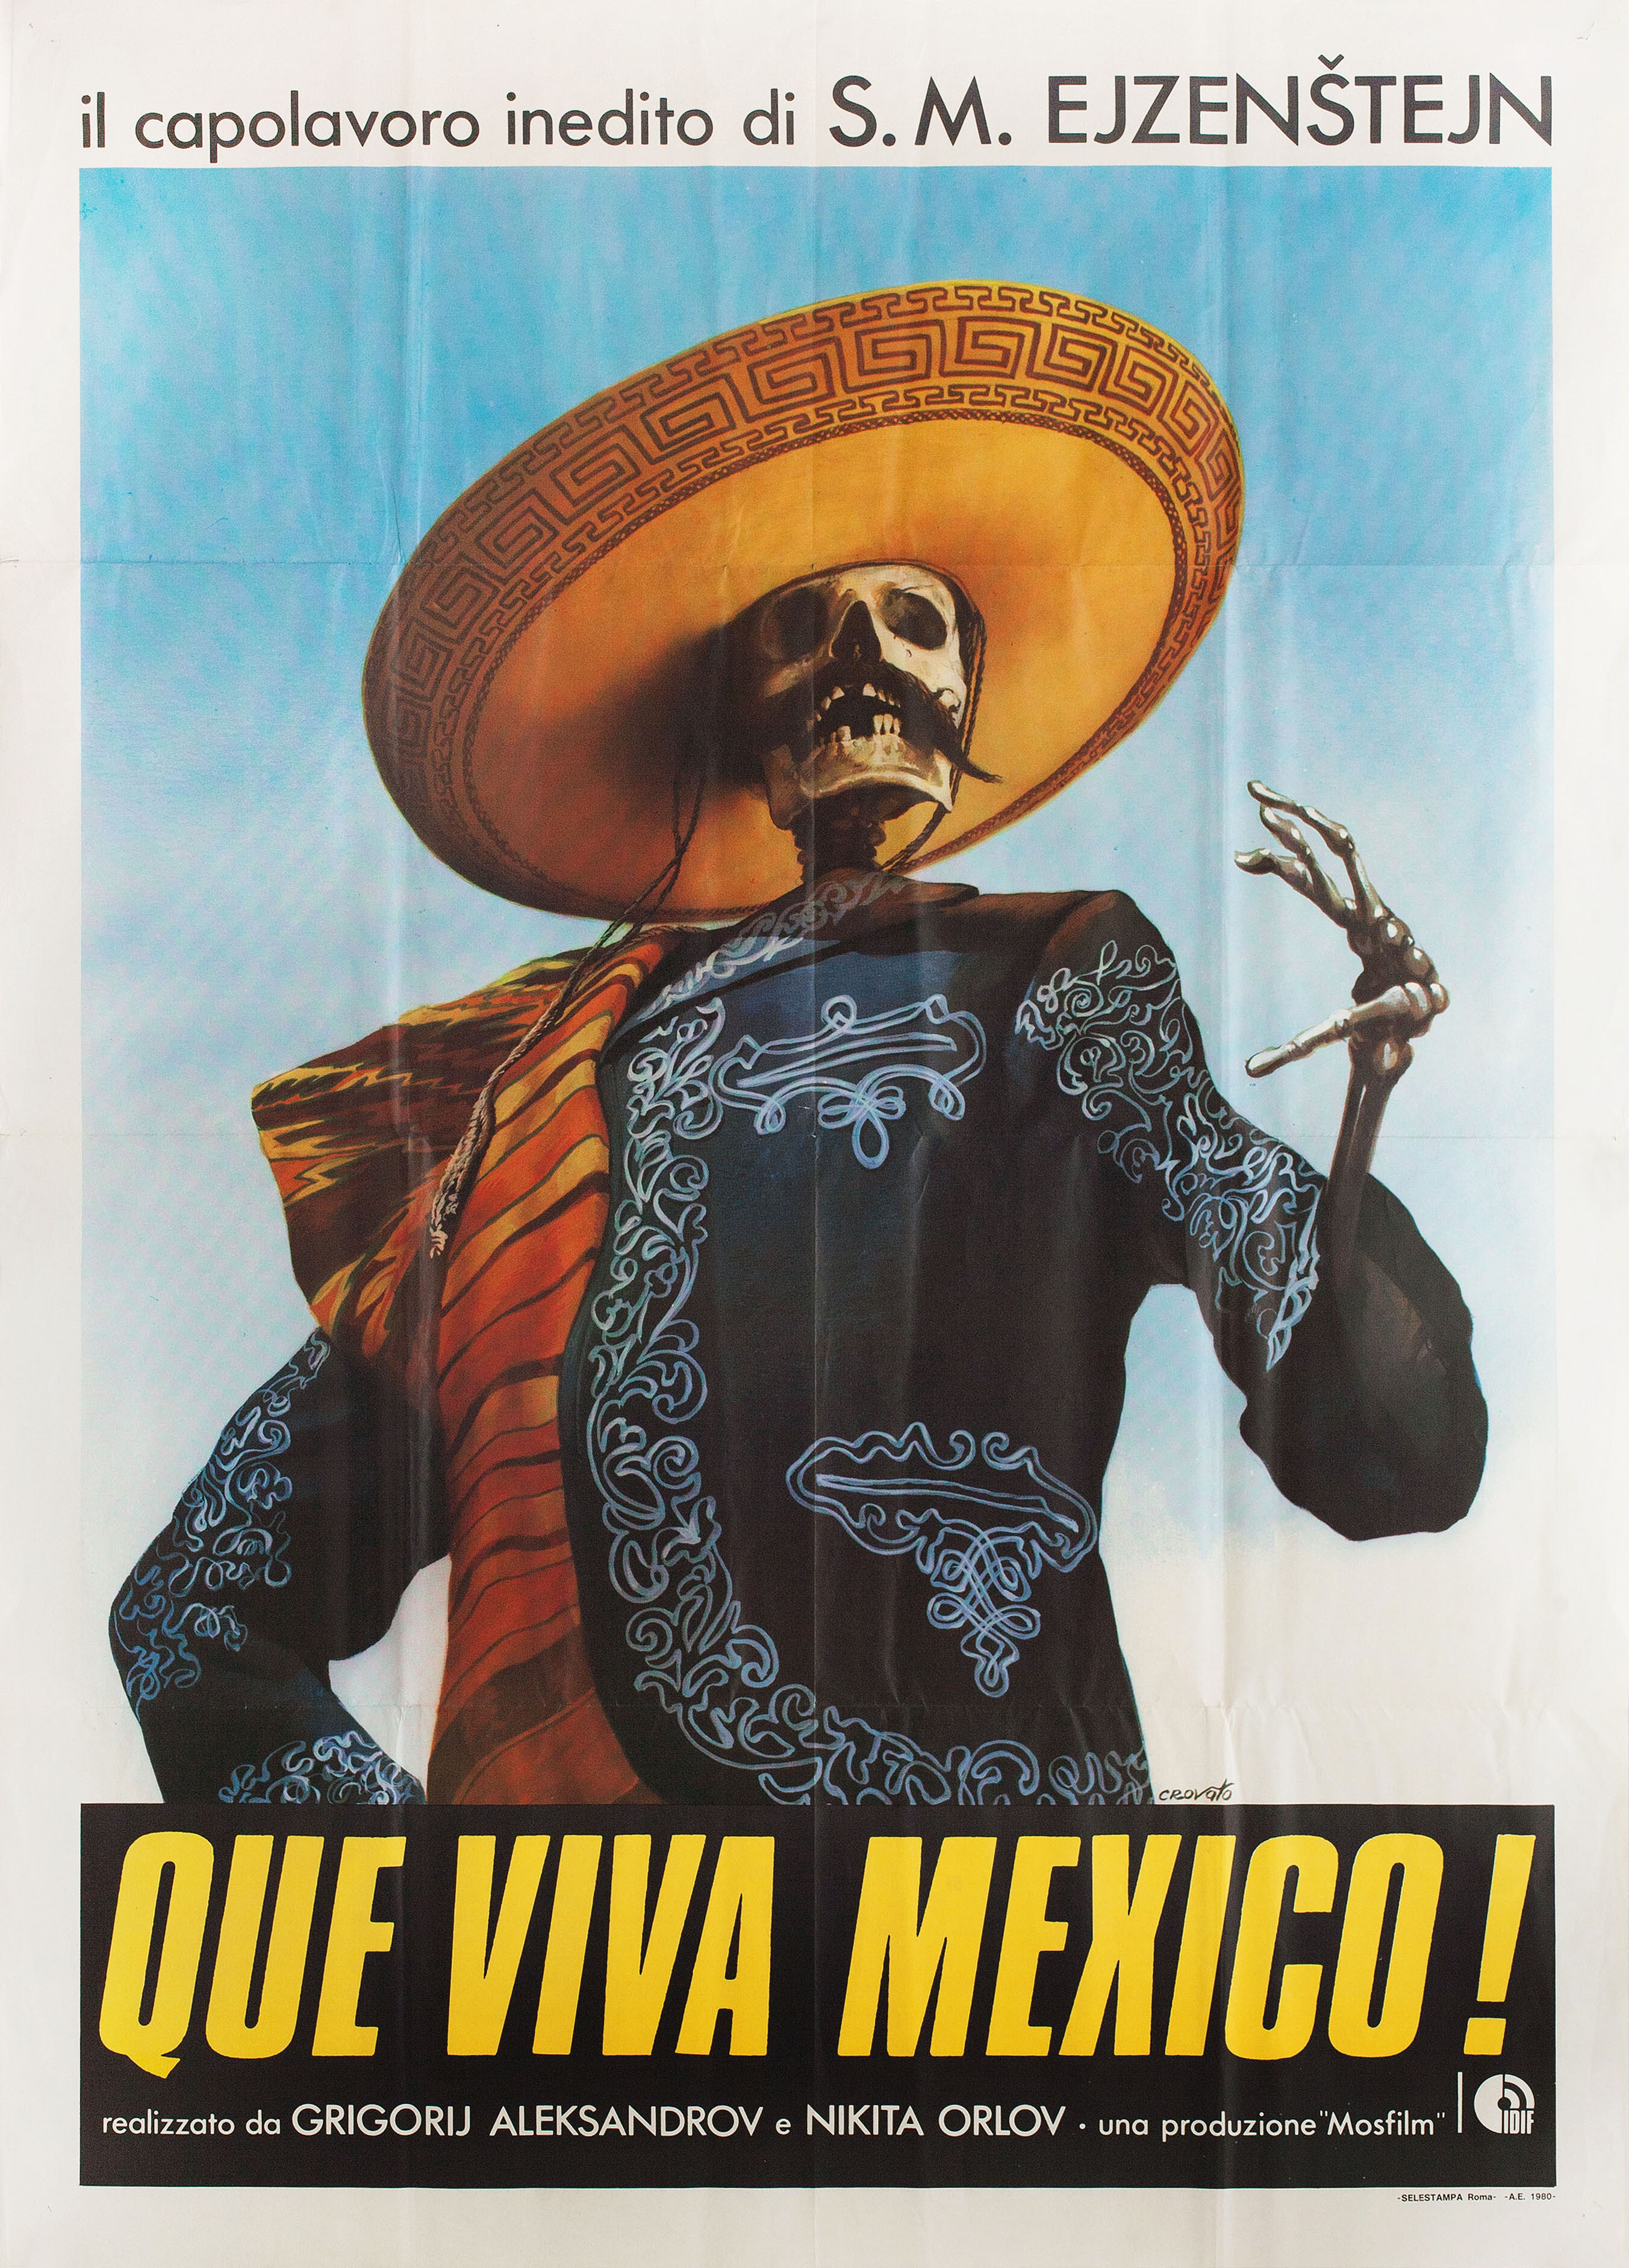 Да здравствует Мексика! (режиссёр Сергей Михайлович Эйзенштейн, 1979), итальянский постер к фильму, автор Лучано Лука Кровато, 1980 год (1)